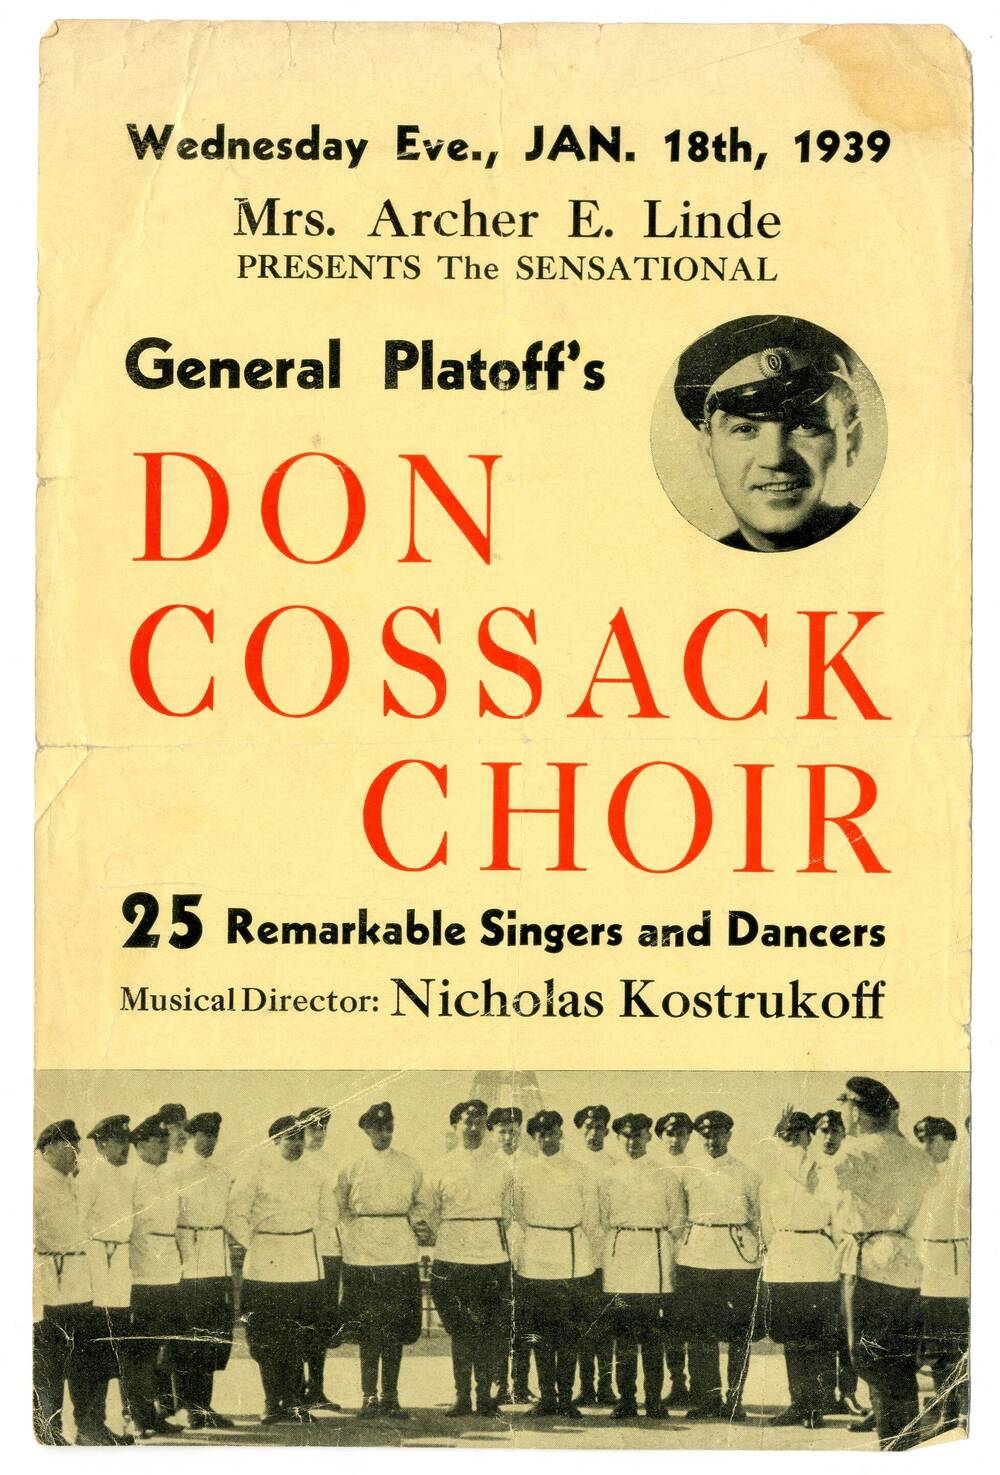 Реклама  концерта хора донских казаков имени М.И. Платова Gen. Platoff. Don Cossack Choir в Америке.